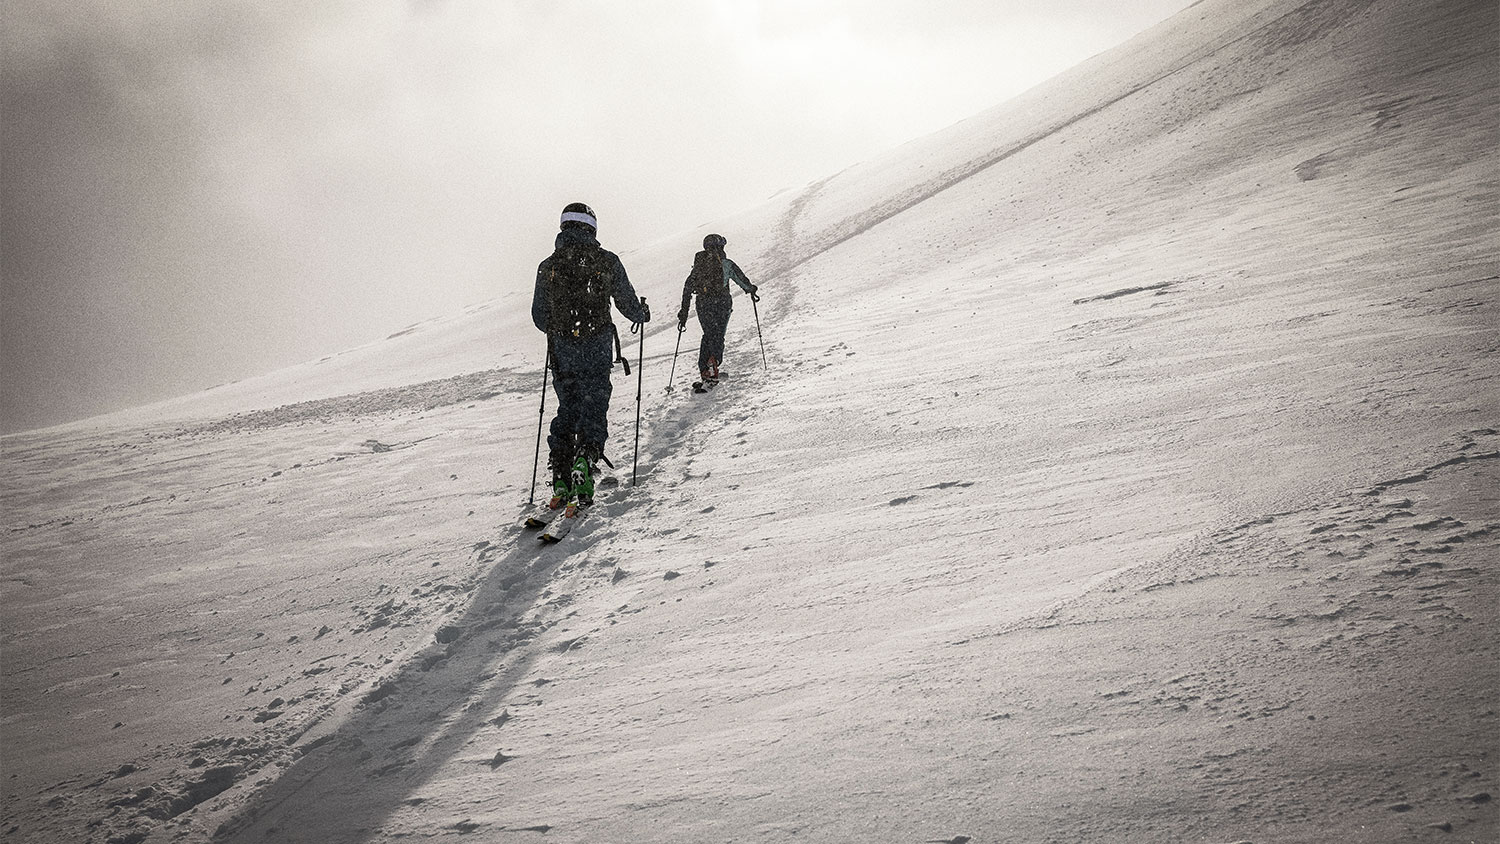 Haglöfs Vassi GTX collectie optimaal voor freeride ski touring